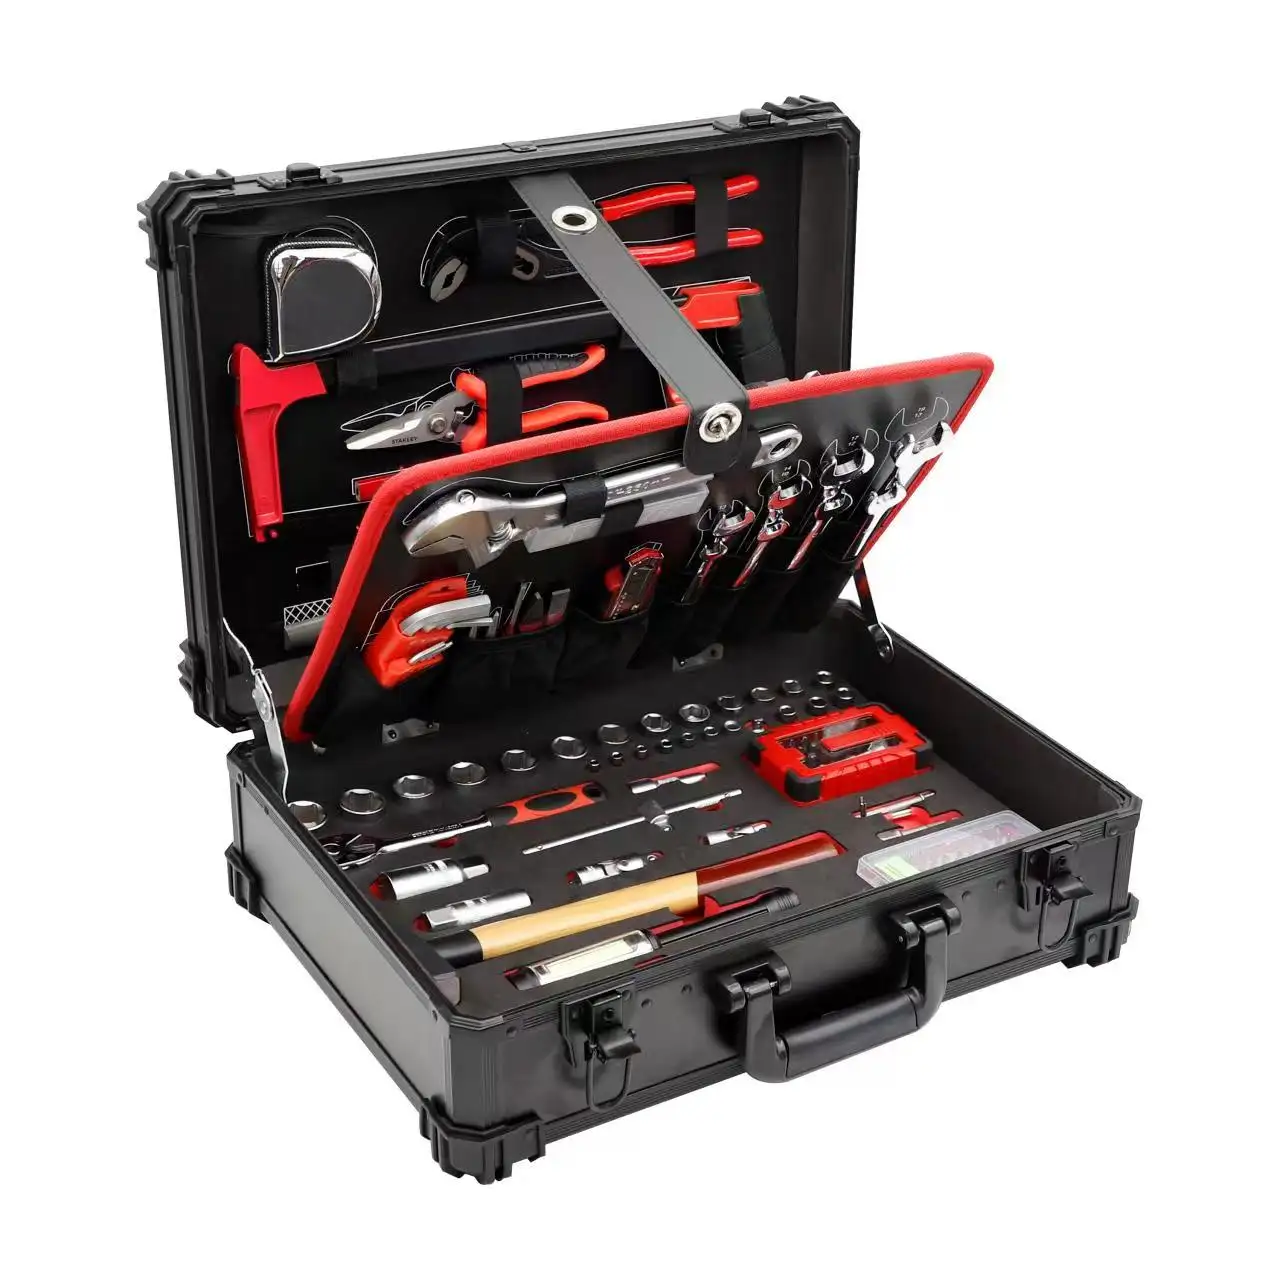 GLARY profession elle Handwerkzeug sets tragbare Box Hardcase Aluminium Set Werkzeuge mit Case Kit Mehrzweck-Werkzeug kasten Box Set